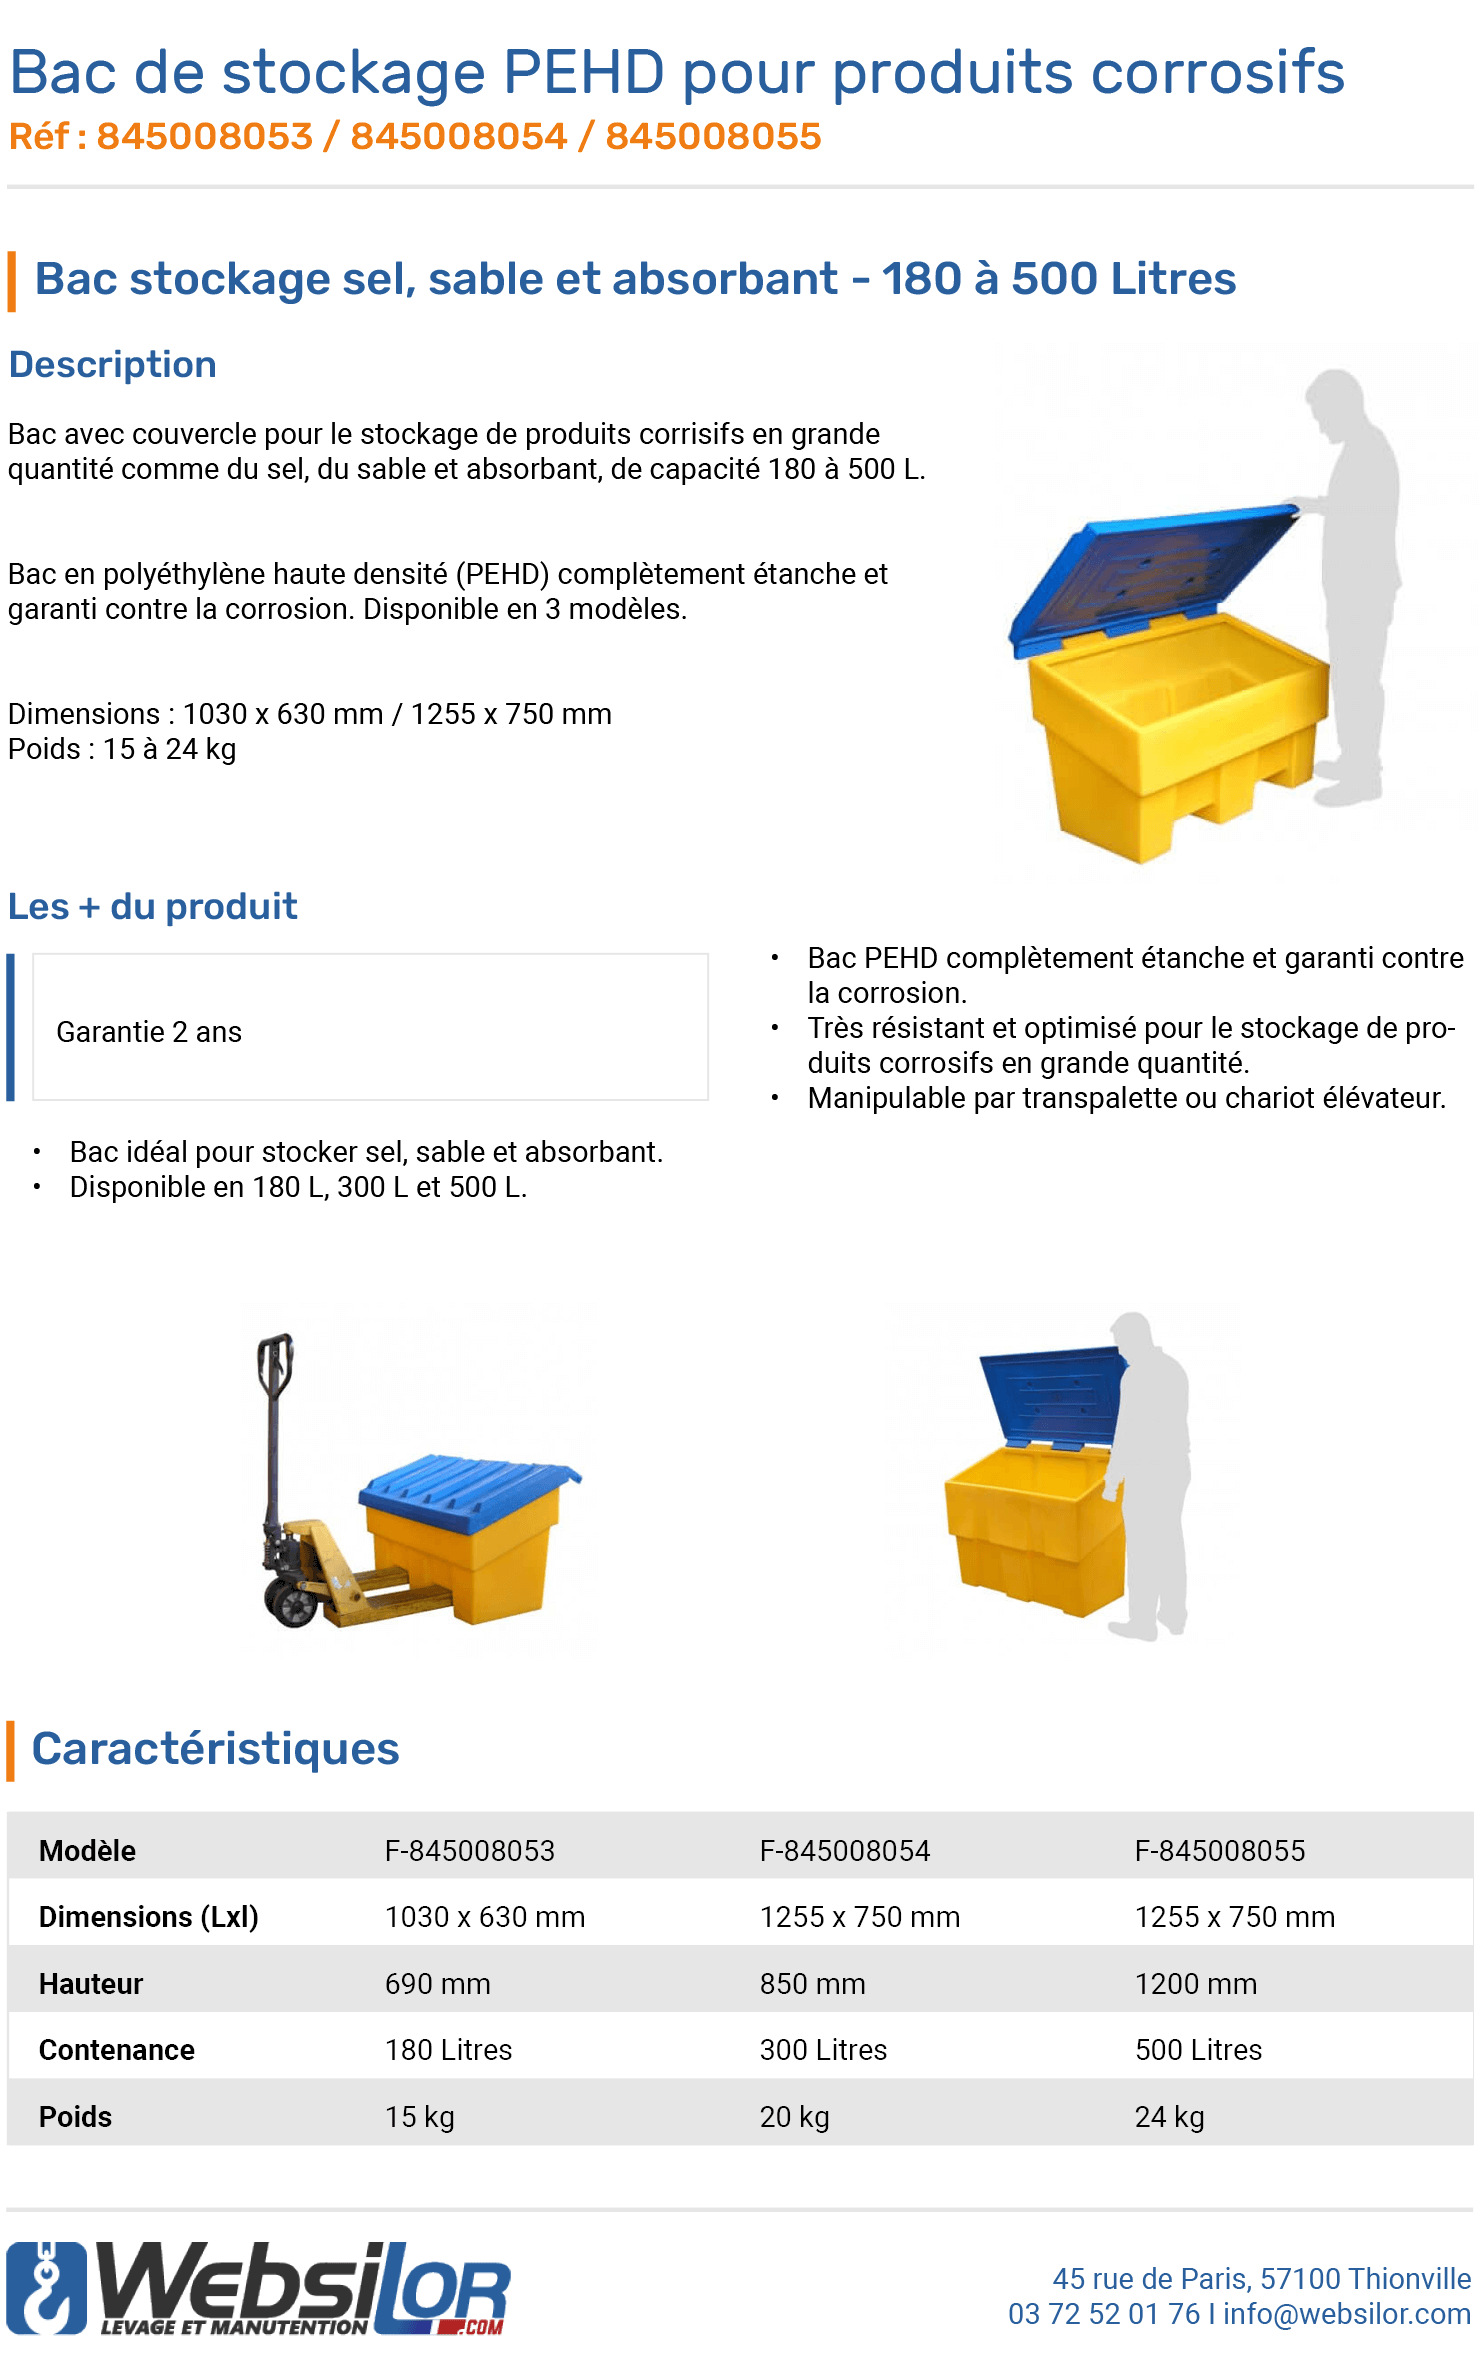 Informations techniques Bac de stockage PEHD pour produits corrosifs